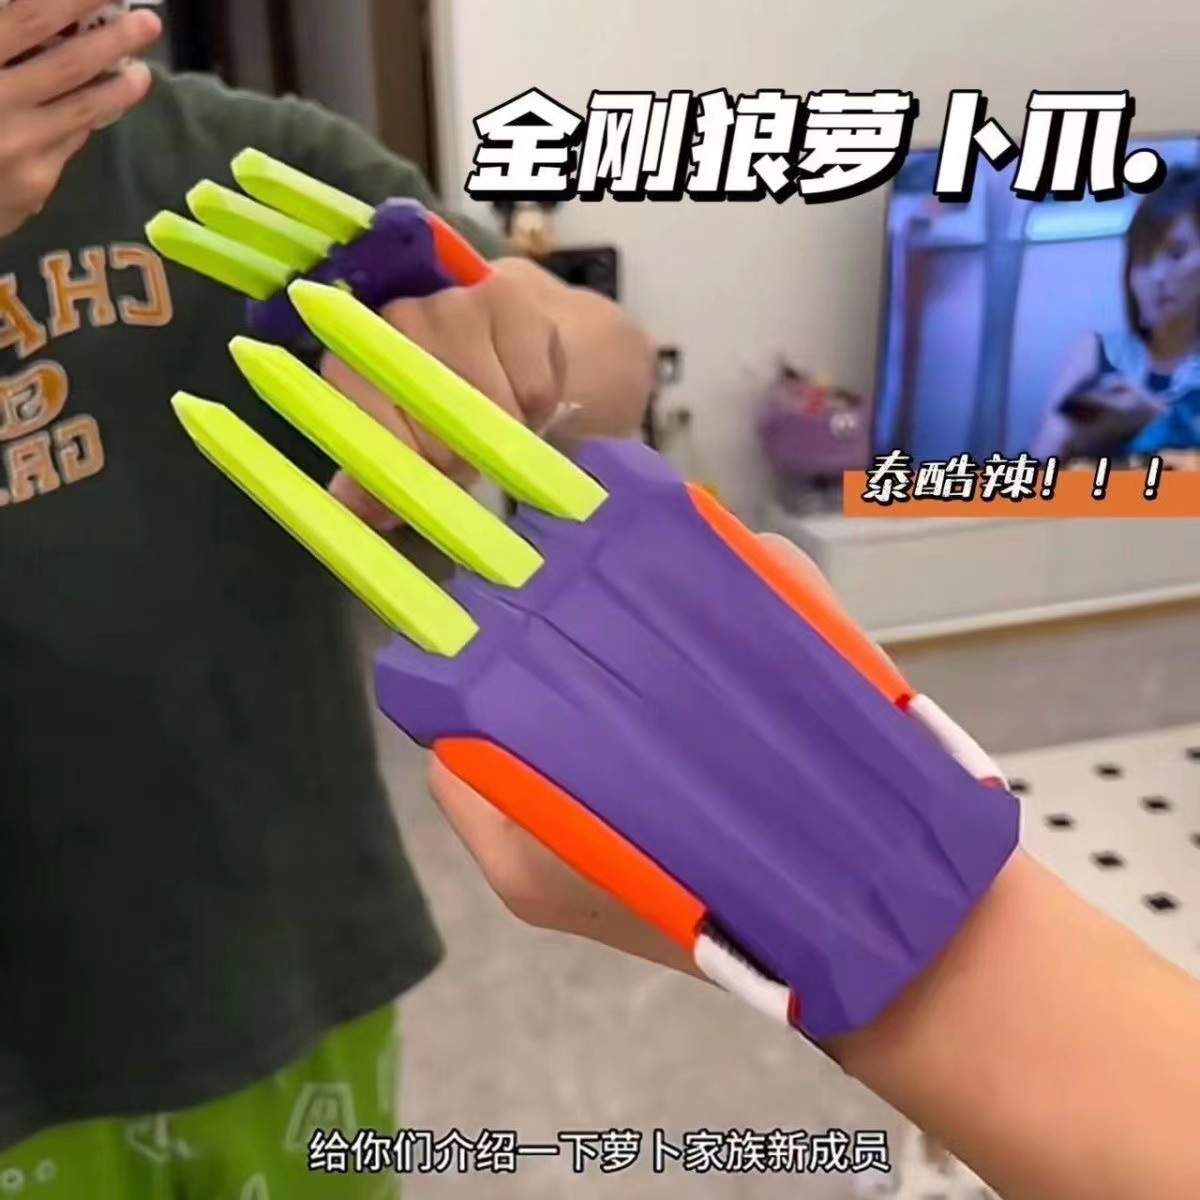 抖音网红同款3D打印金刚狼萝卜爪塑料爪子模型道具萝卜刀解压玩具图